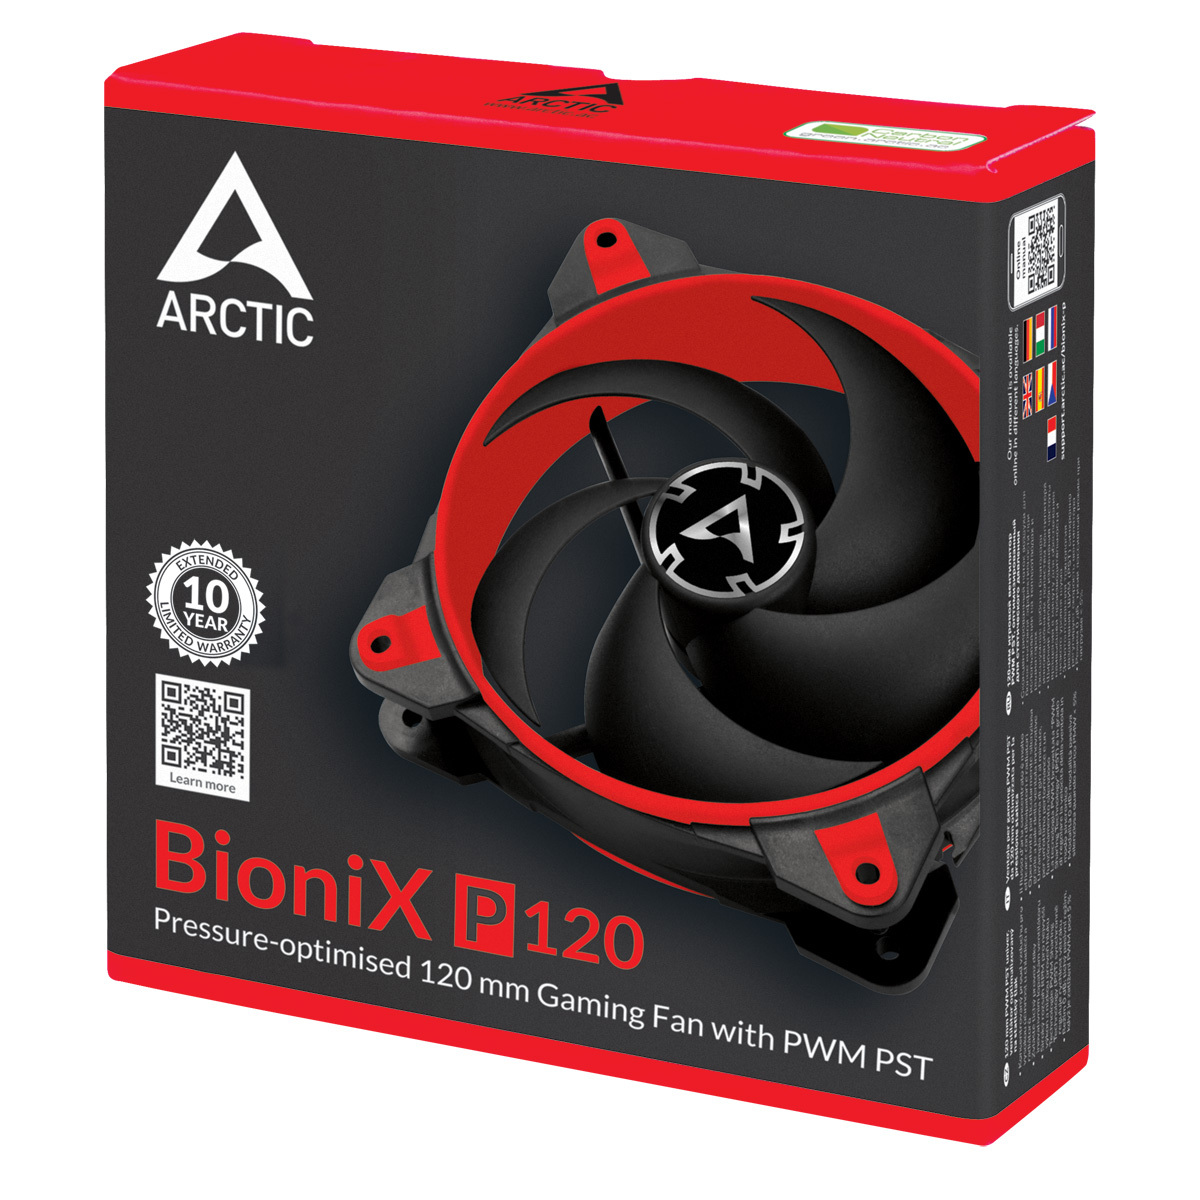 Arctic BioniX P120 / Red